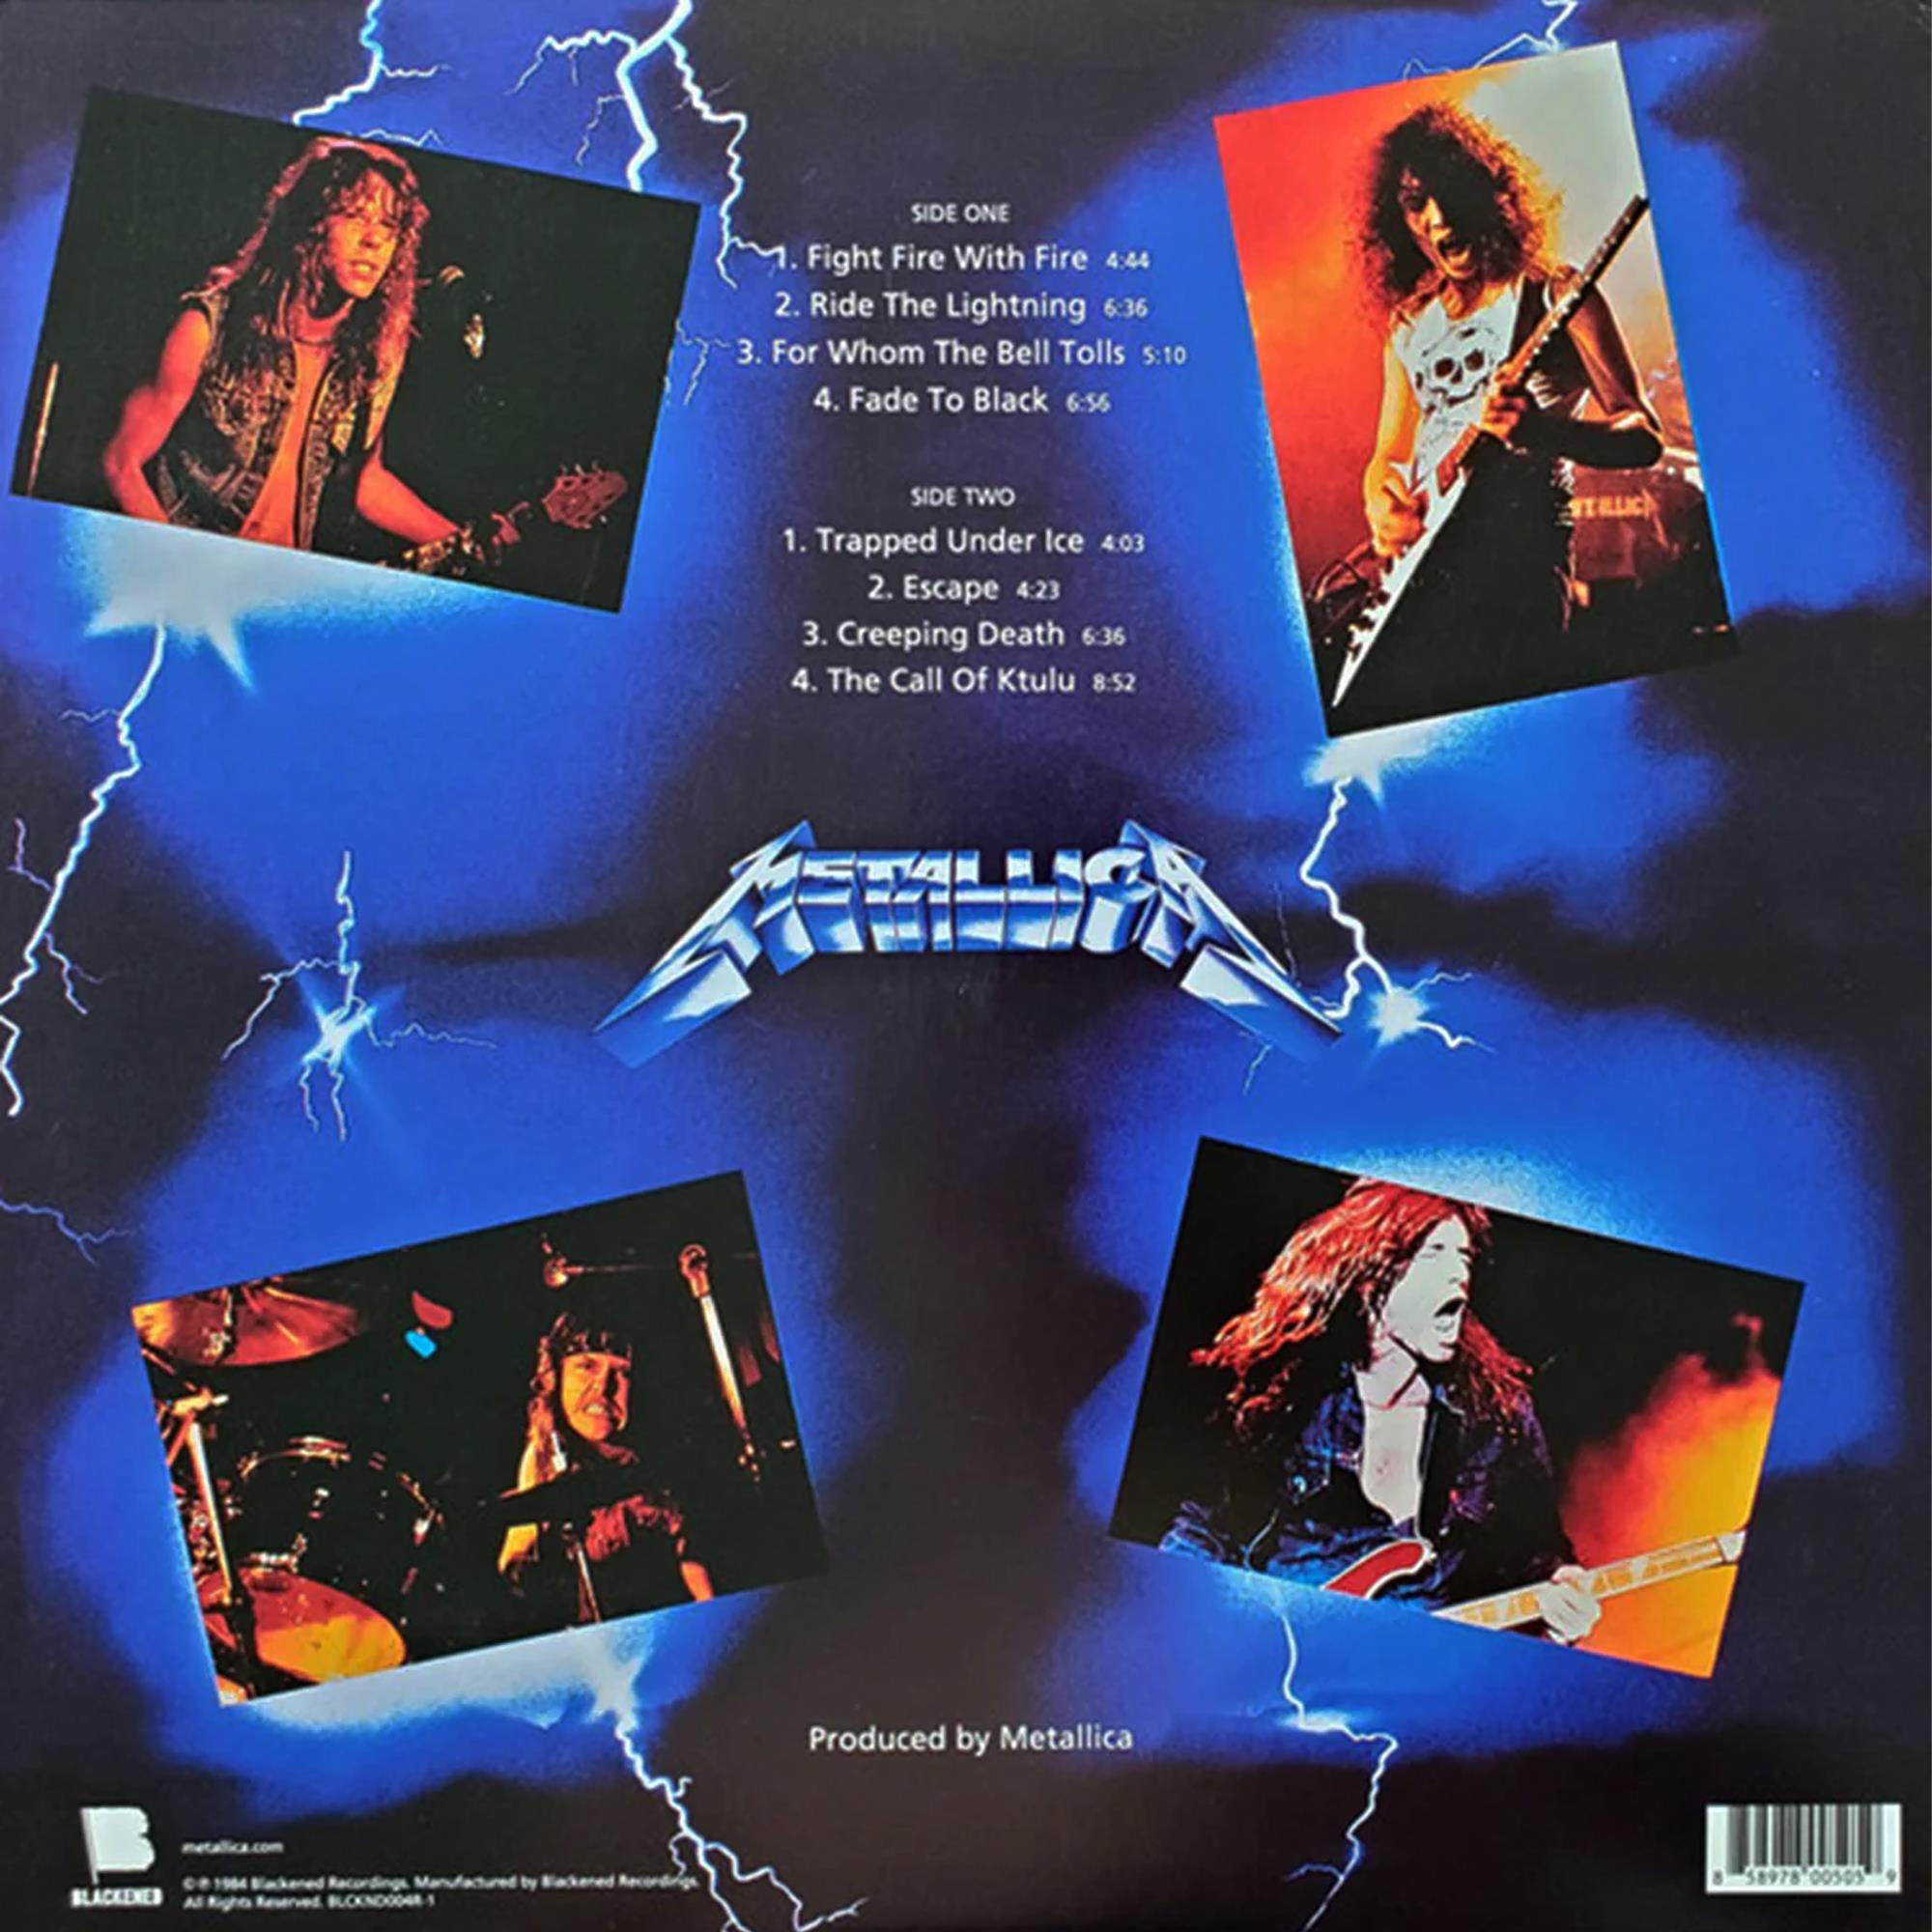 Ride The Lightning Vinyl